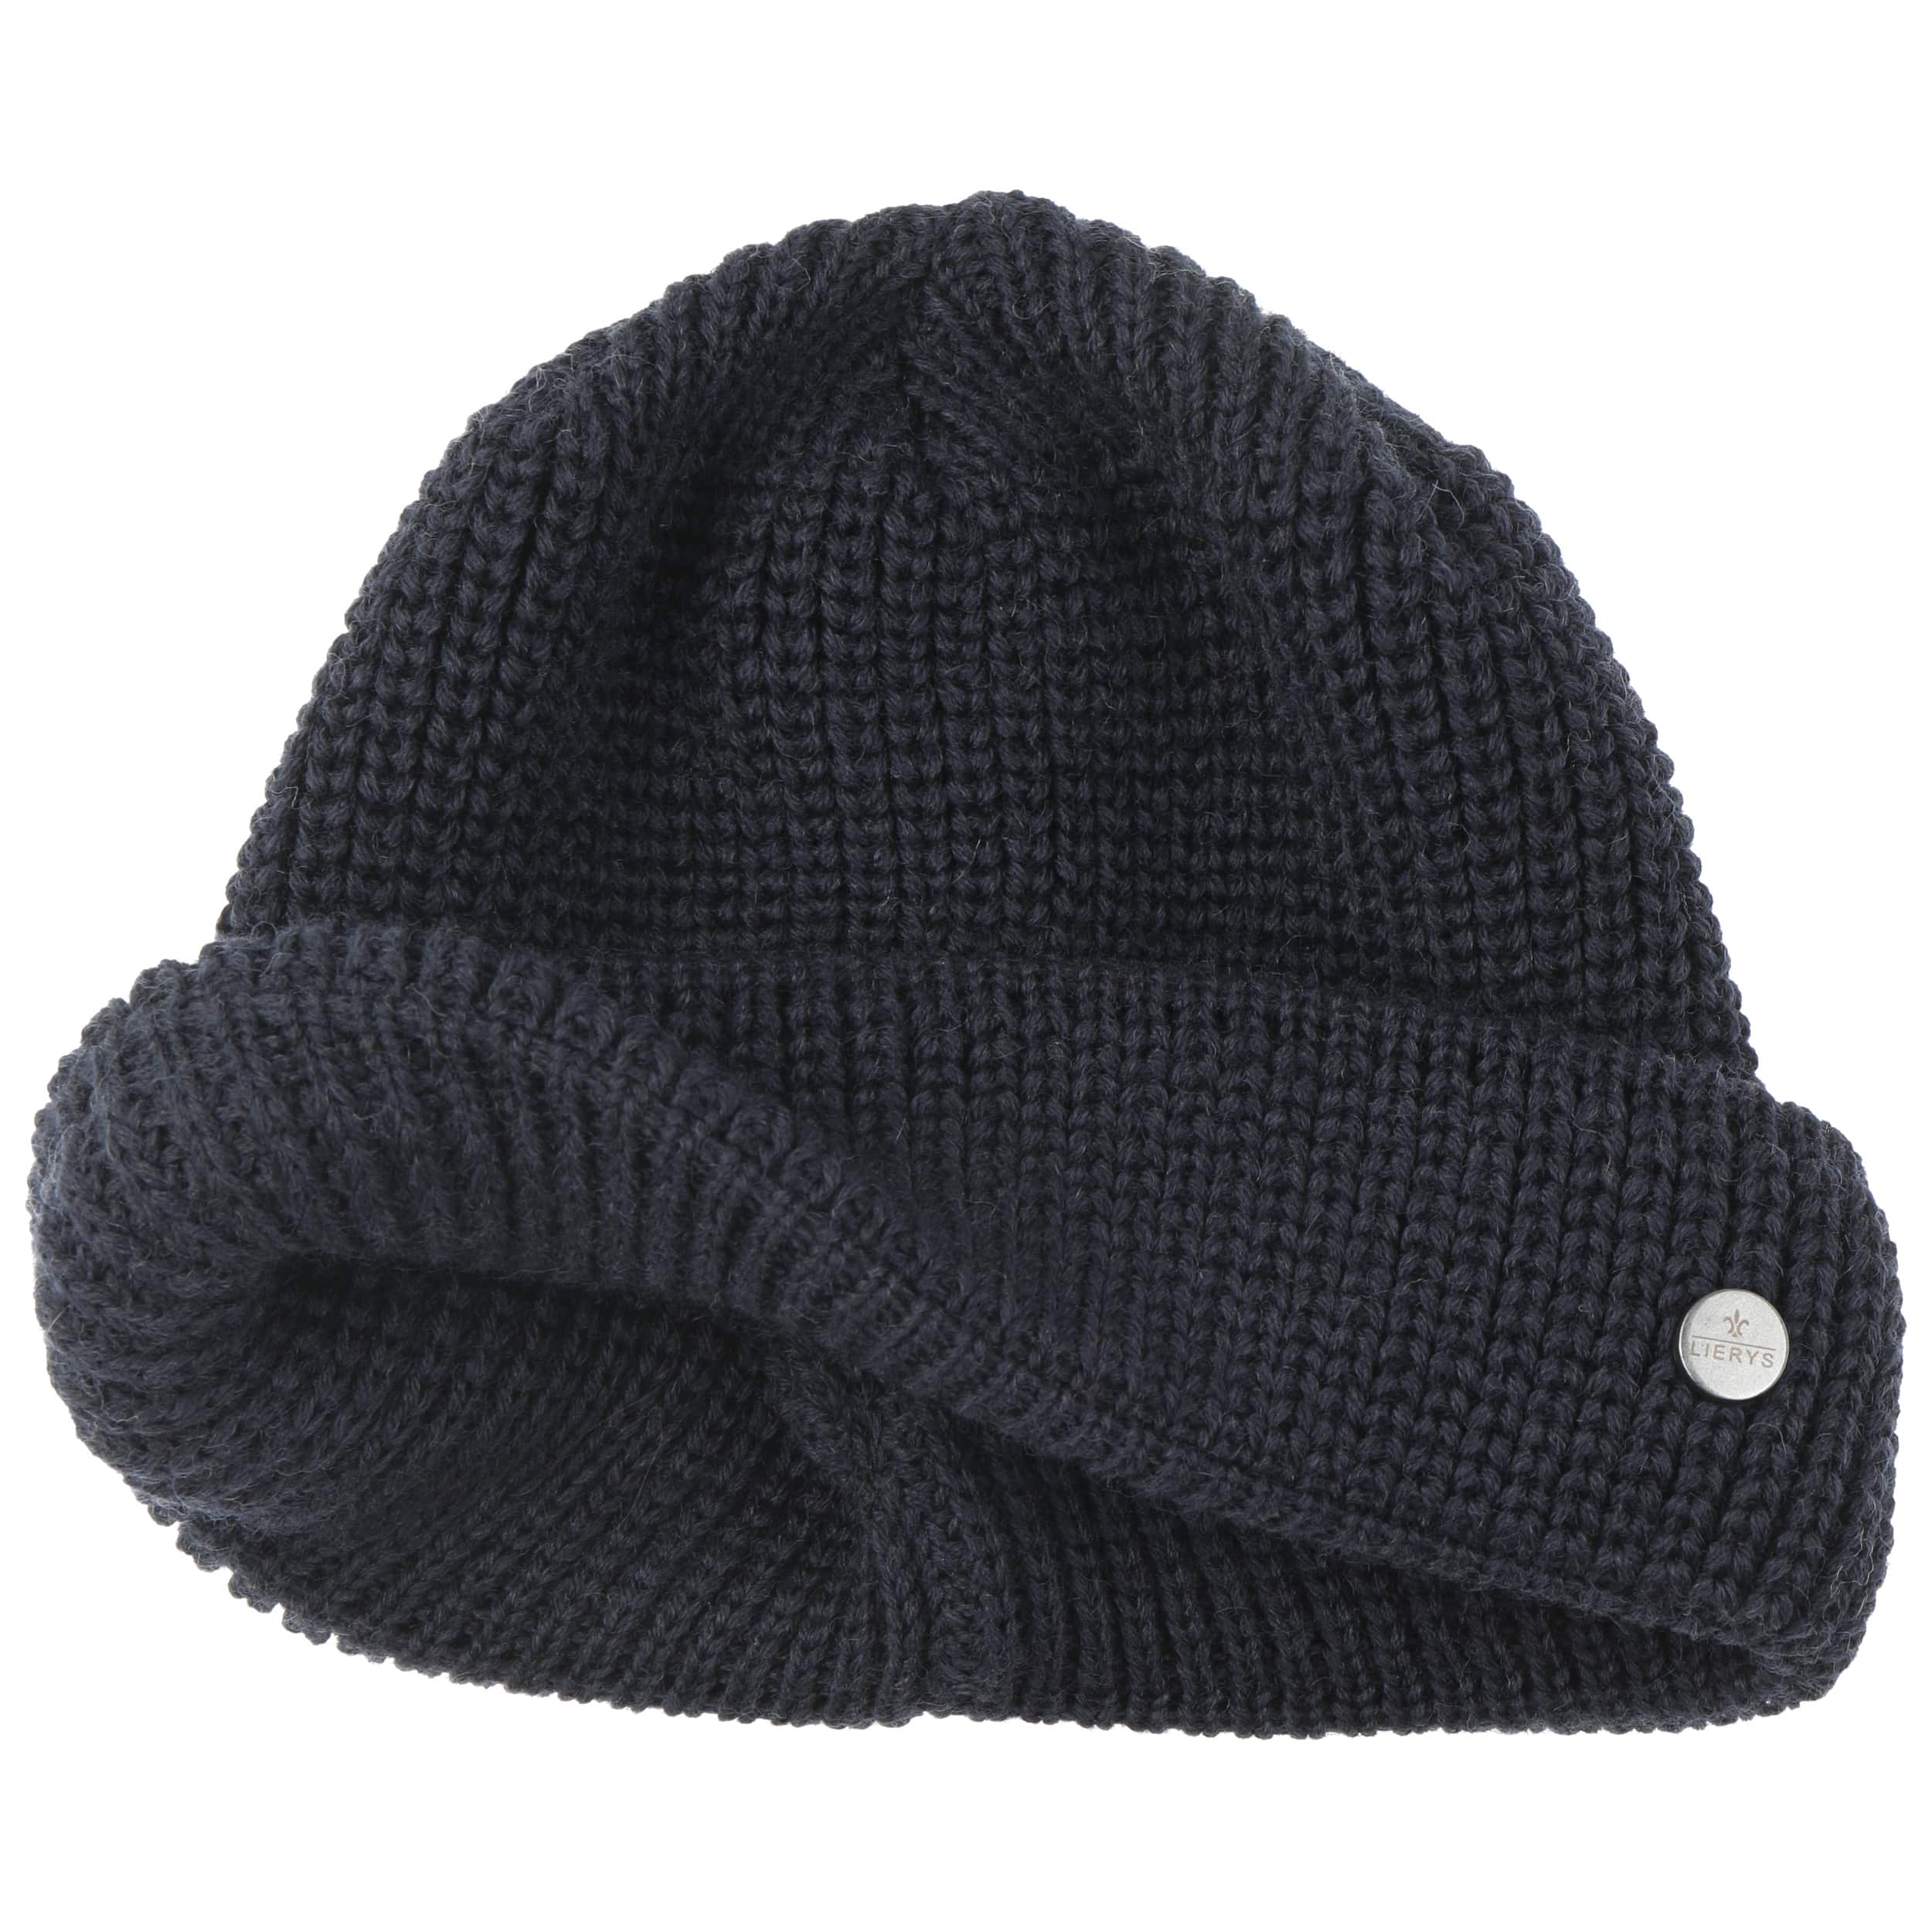 Costa Knit Docker Hat by Lierys - Blue - Female - Size: One Size